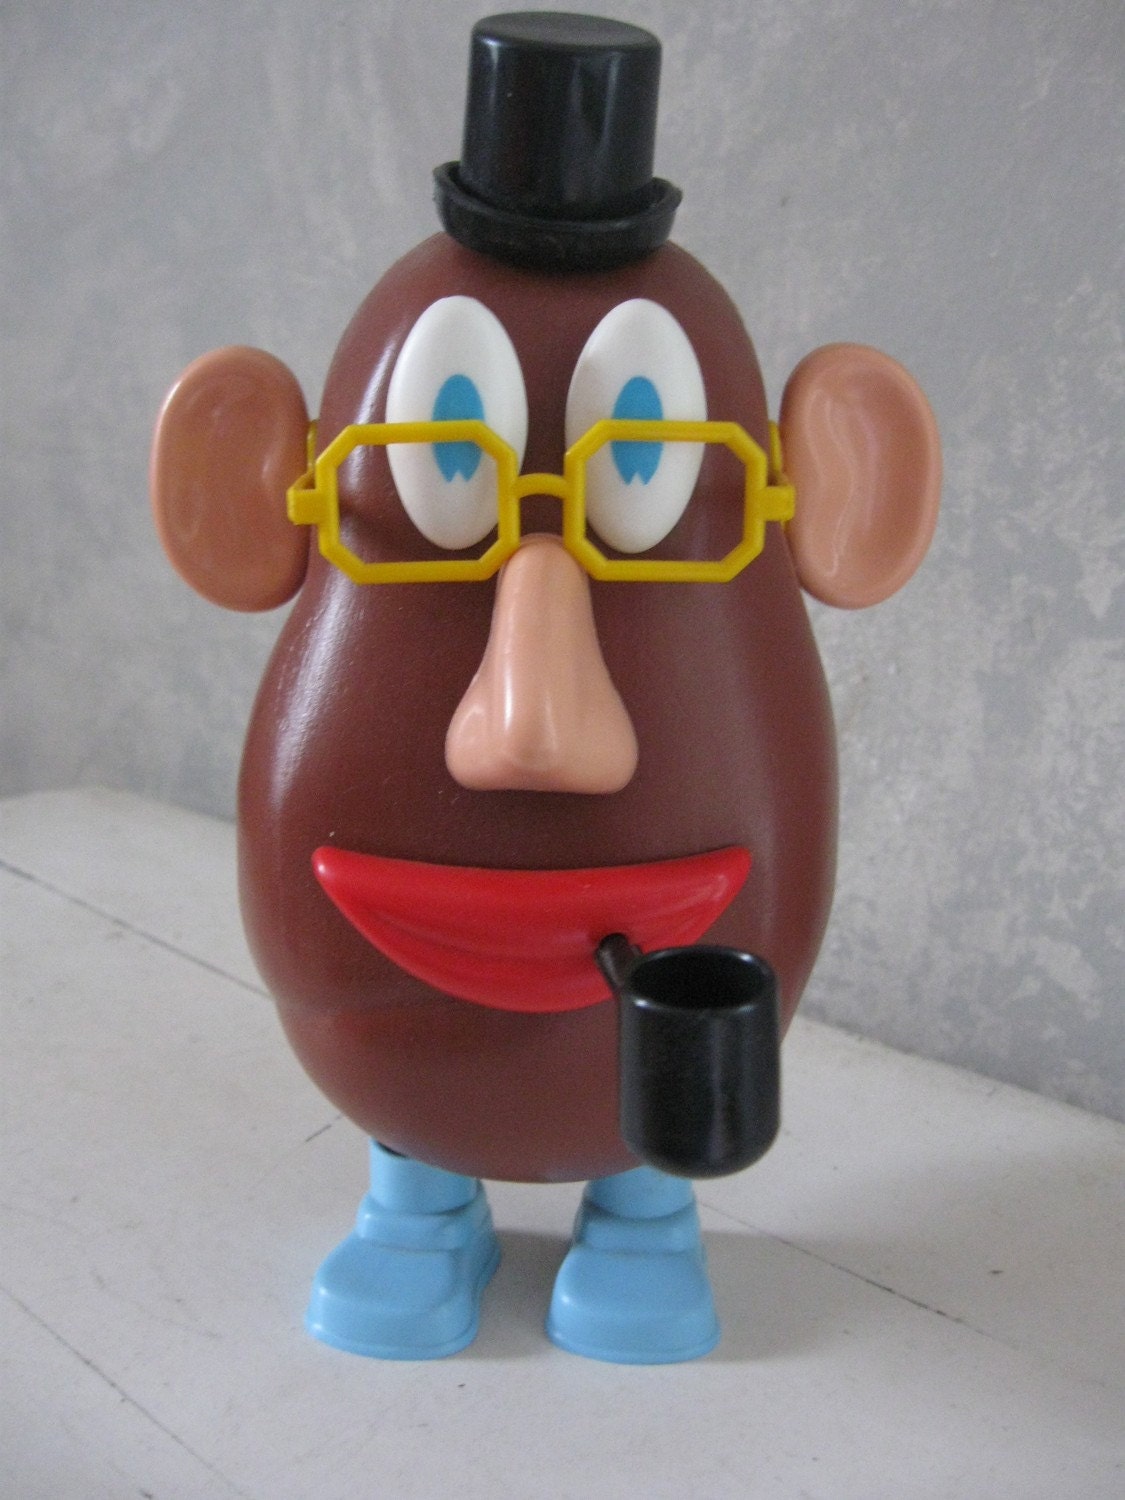 Vintage Mr Potato Head Toy 1973 Hasbro by bigfishlilpond on Etsy